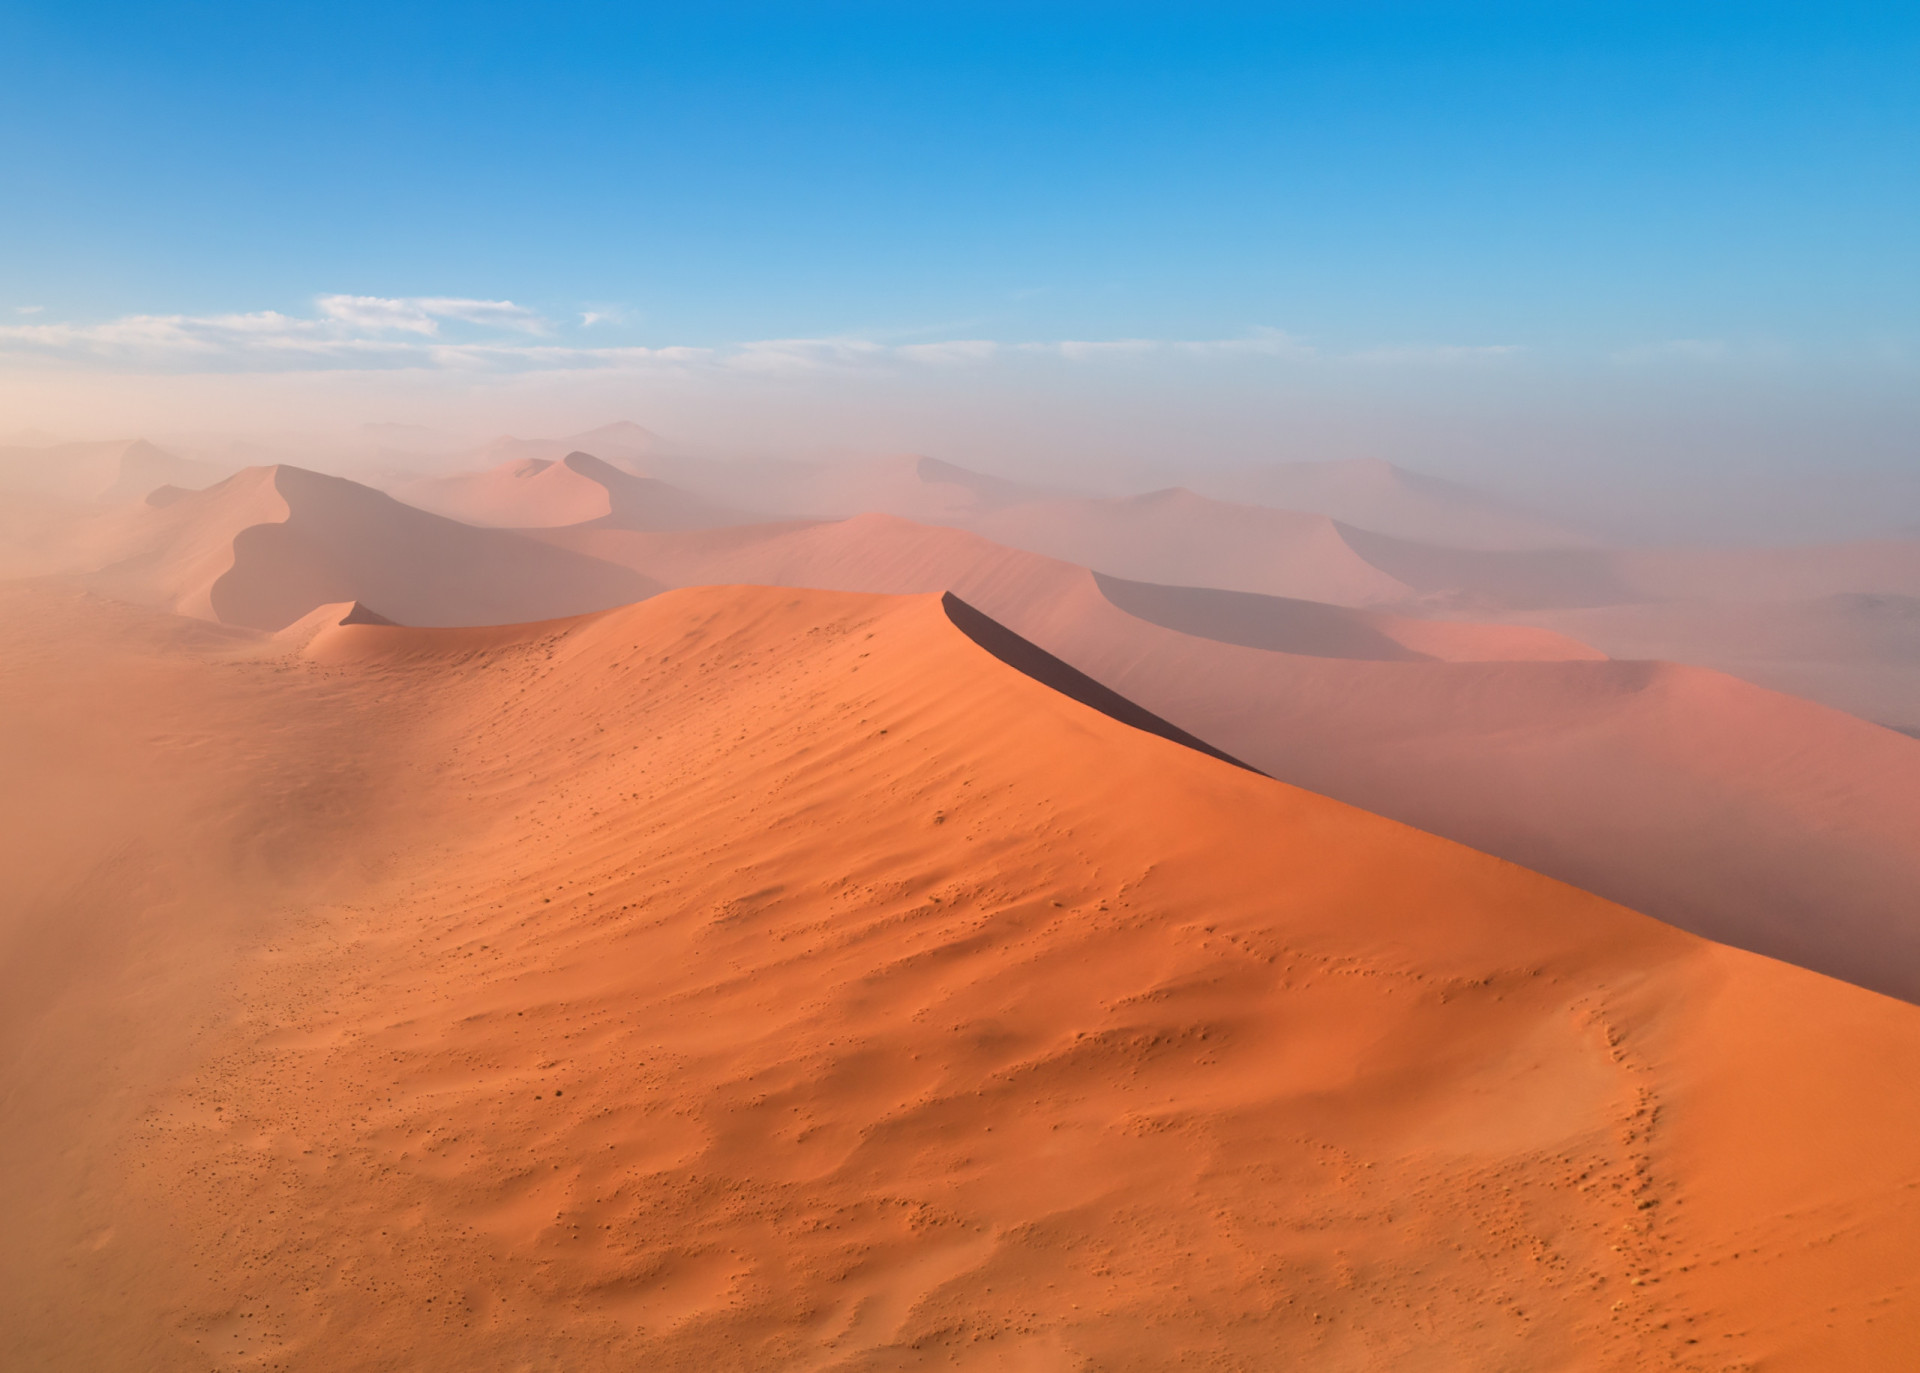 <p>Datant de 55 à 80 millions d'années, le Namib est considéré comme le plus ancien désert du monde.</p><p><a href="https://www.msn.com/fr-ca/community/channel/vid-7xx8mnucu55yw63we9va2gwr7uihbxwc68fxqp25x6tg4ftibpra?cvid=94631541bc0f4f89bfd59158d696ad7e">Suivez-nous et accédez tous les jours à du contenu exclusif</a></p>